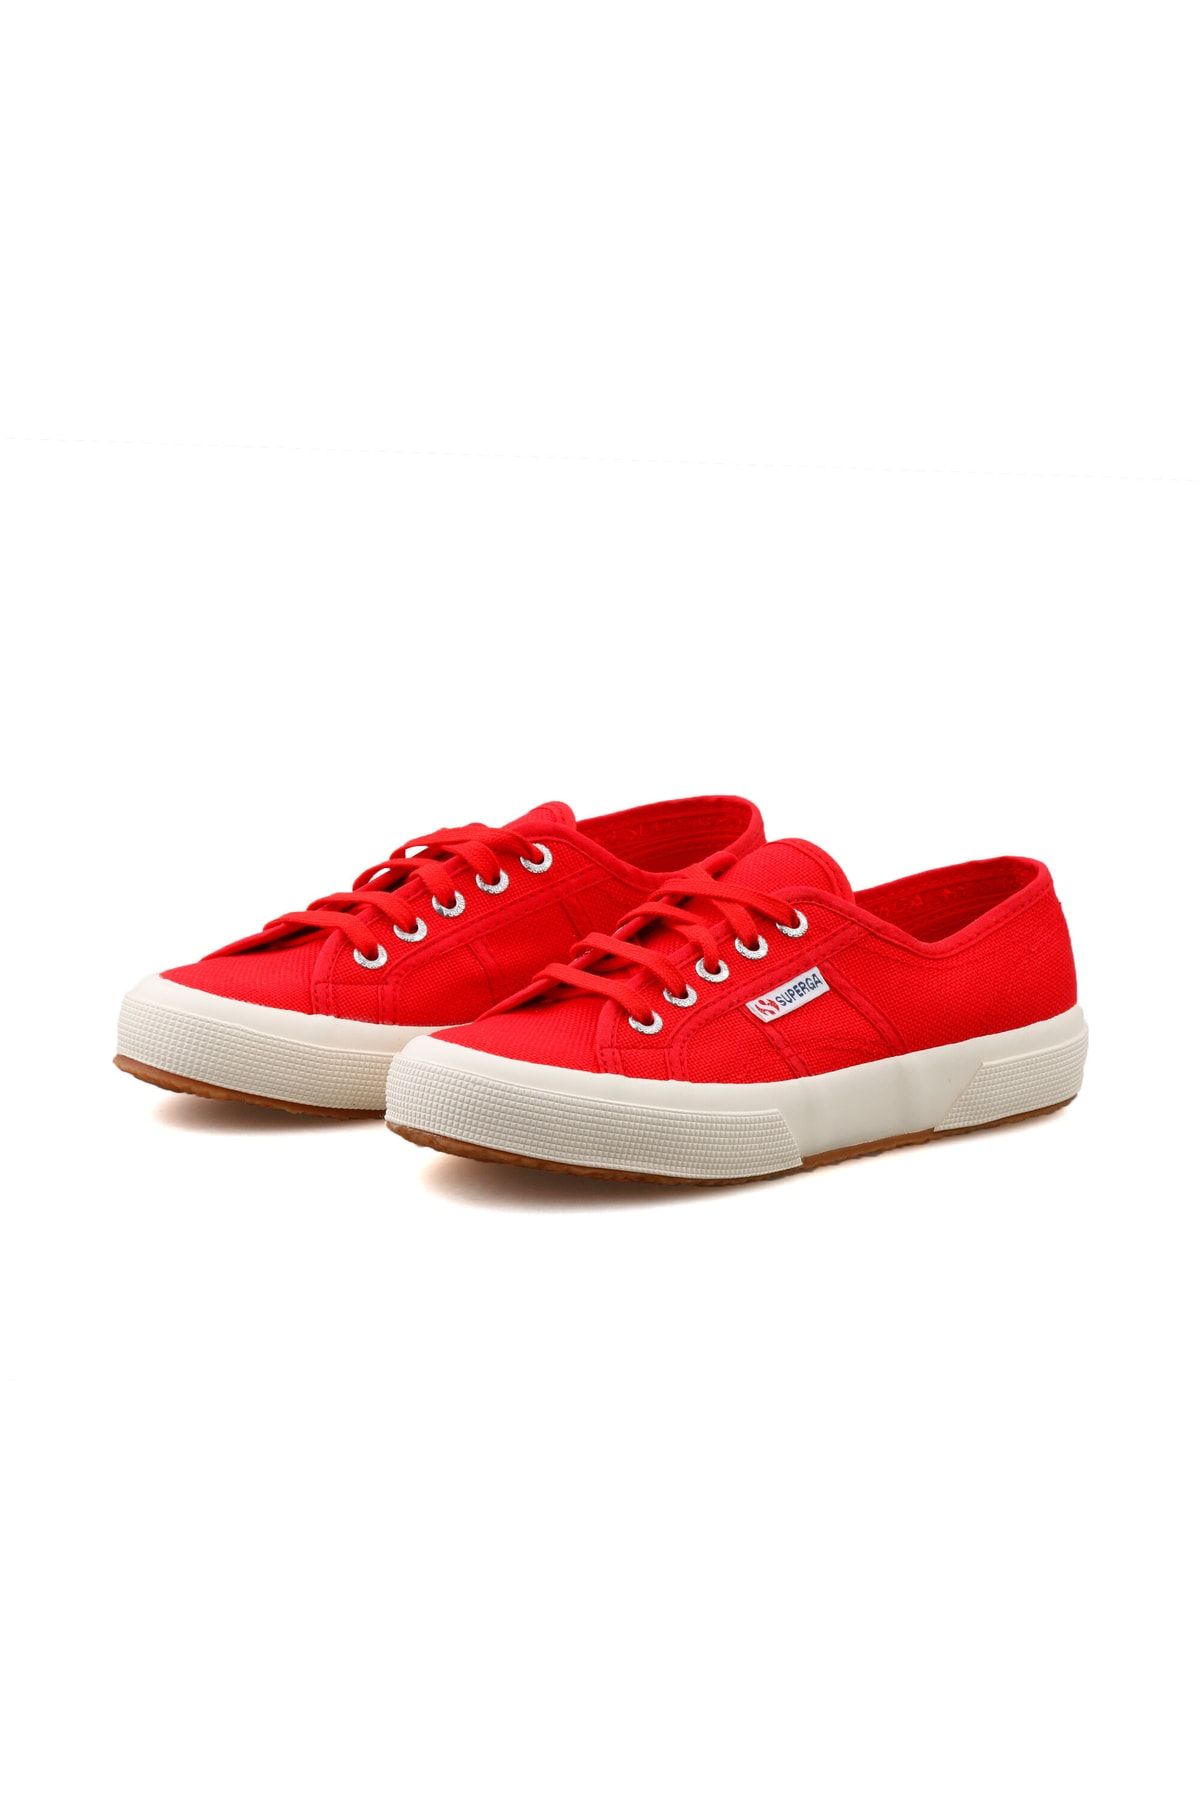 Superga Kadın Günlük Ayakkabı S000010-975-sp Kırmızı